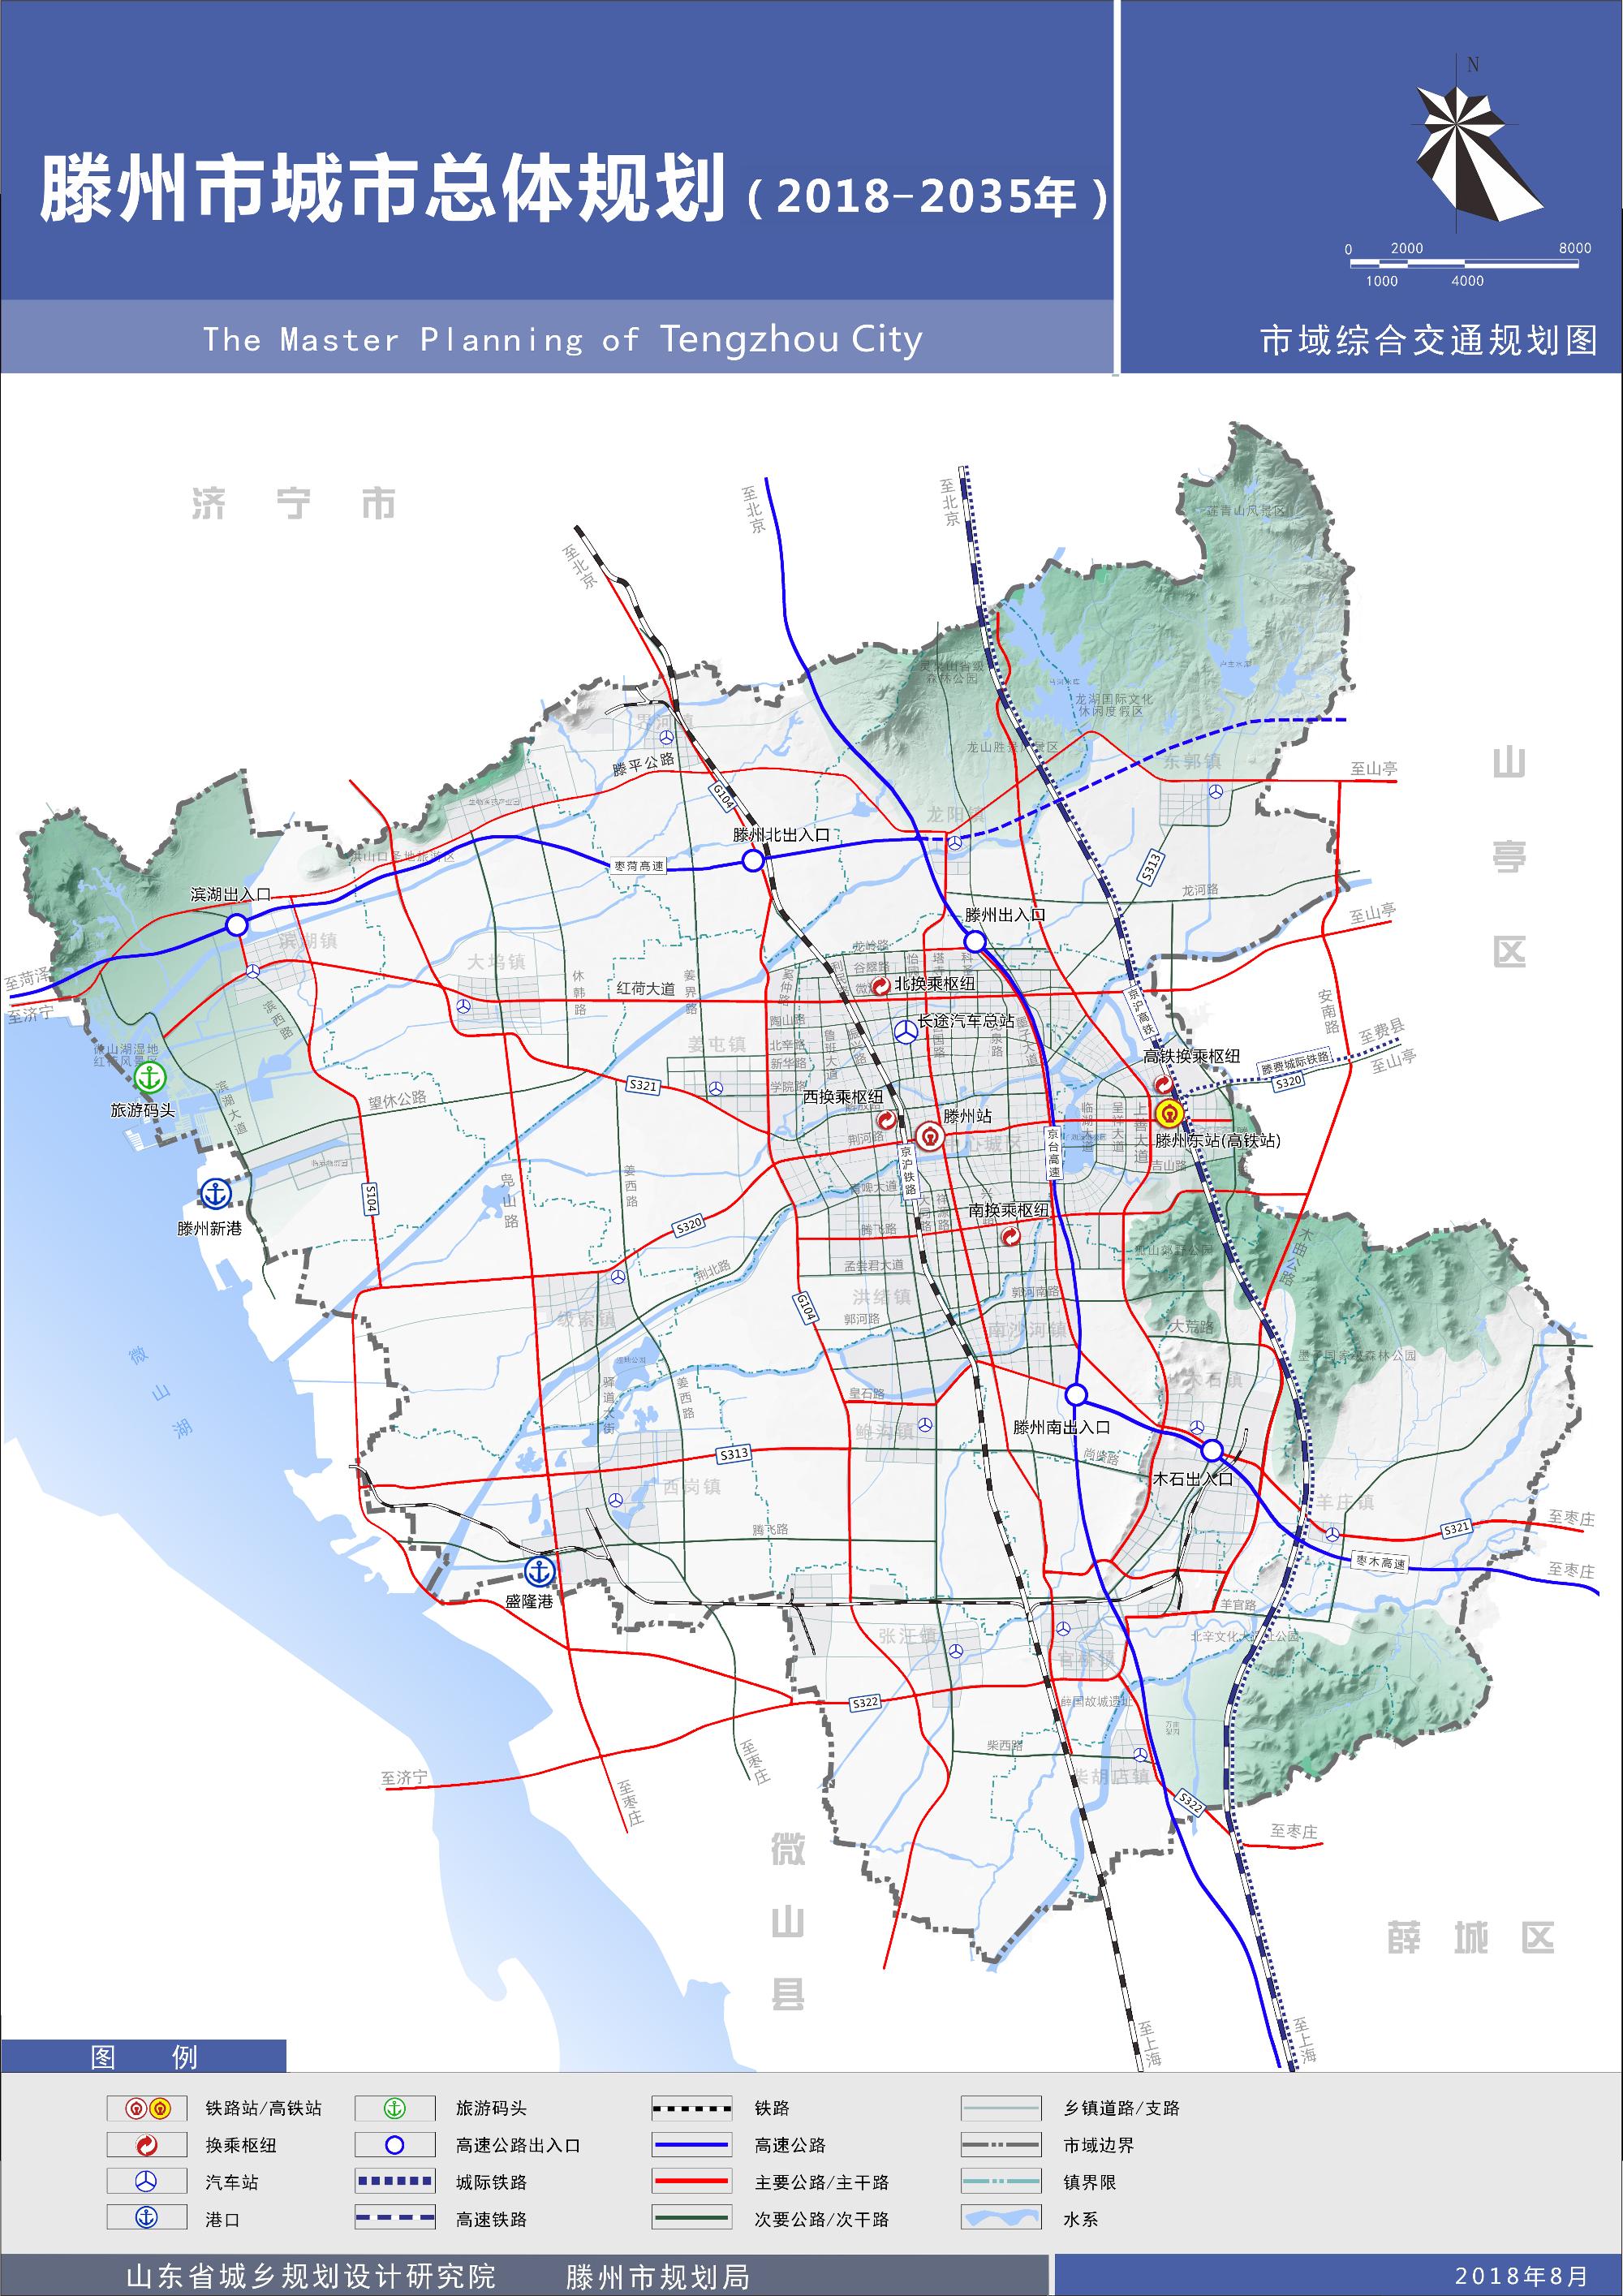 《滕州市城市总体规划(2018-2035年)》(草案)公示